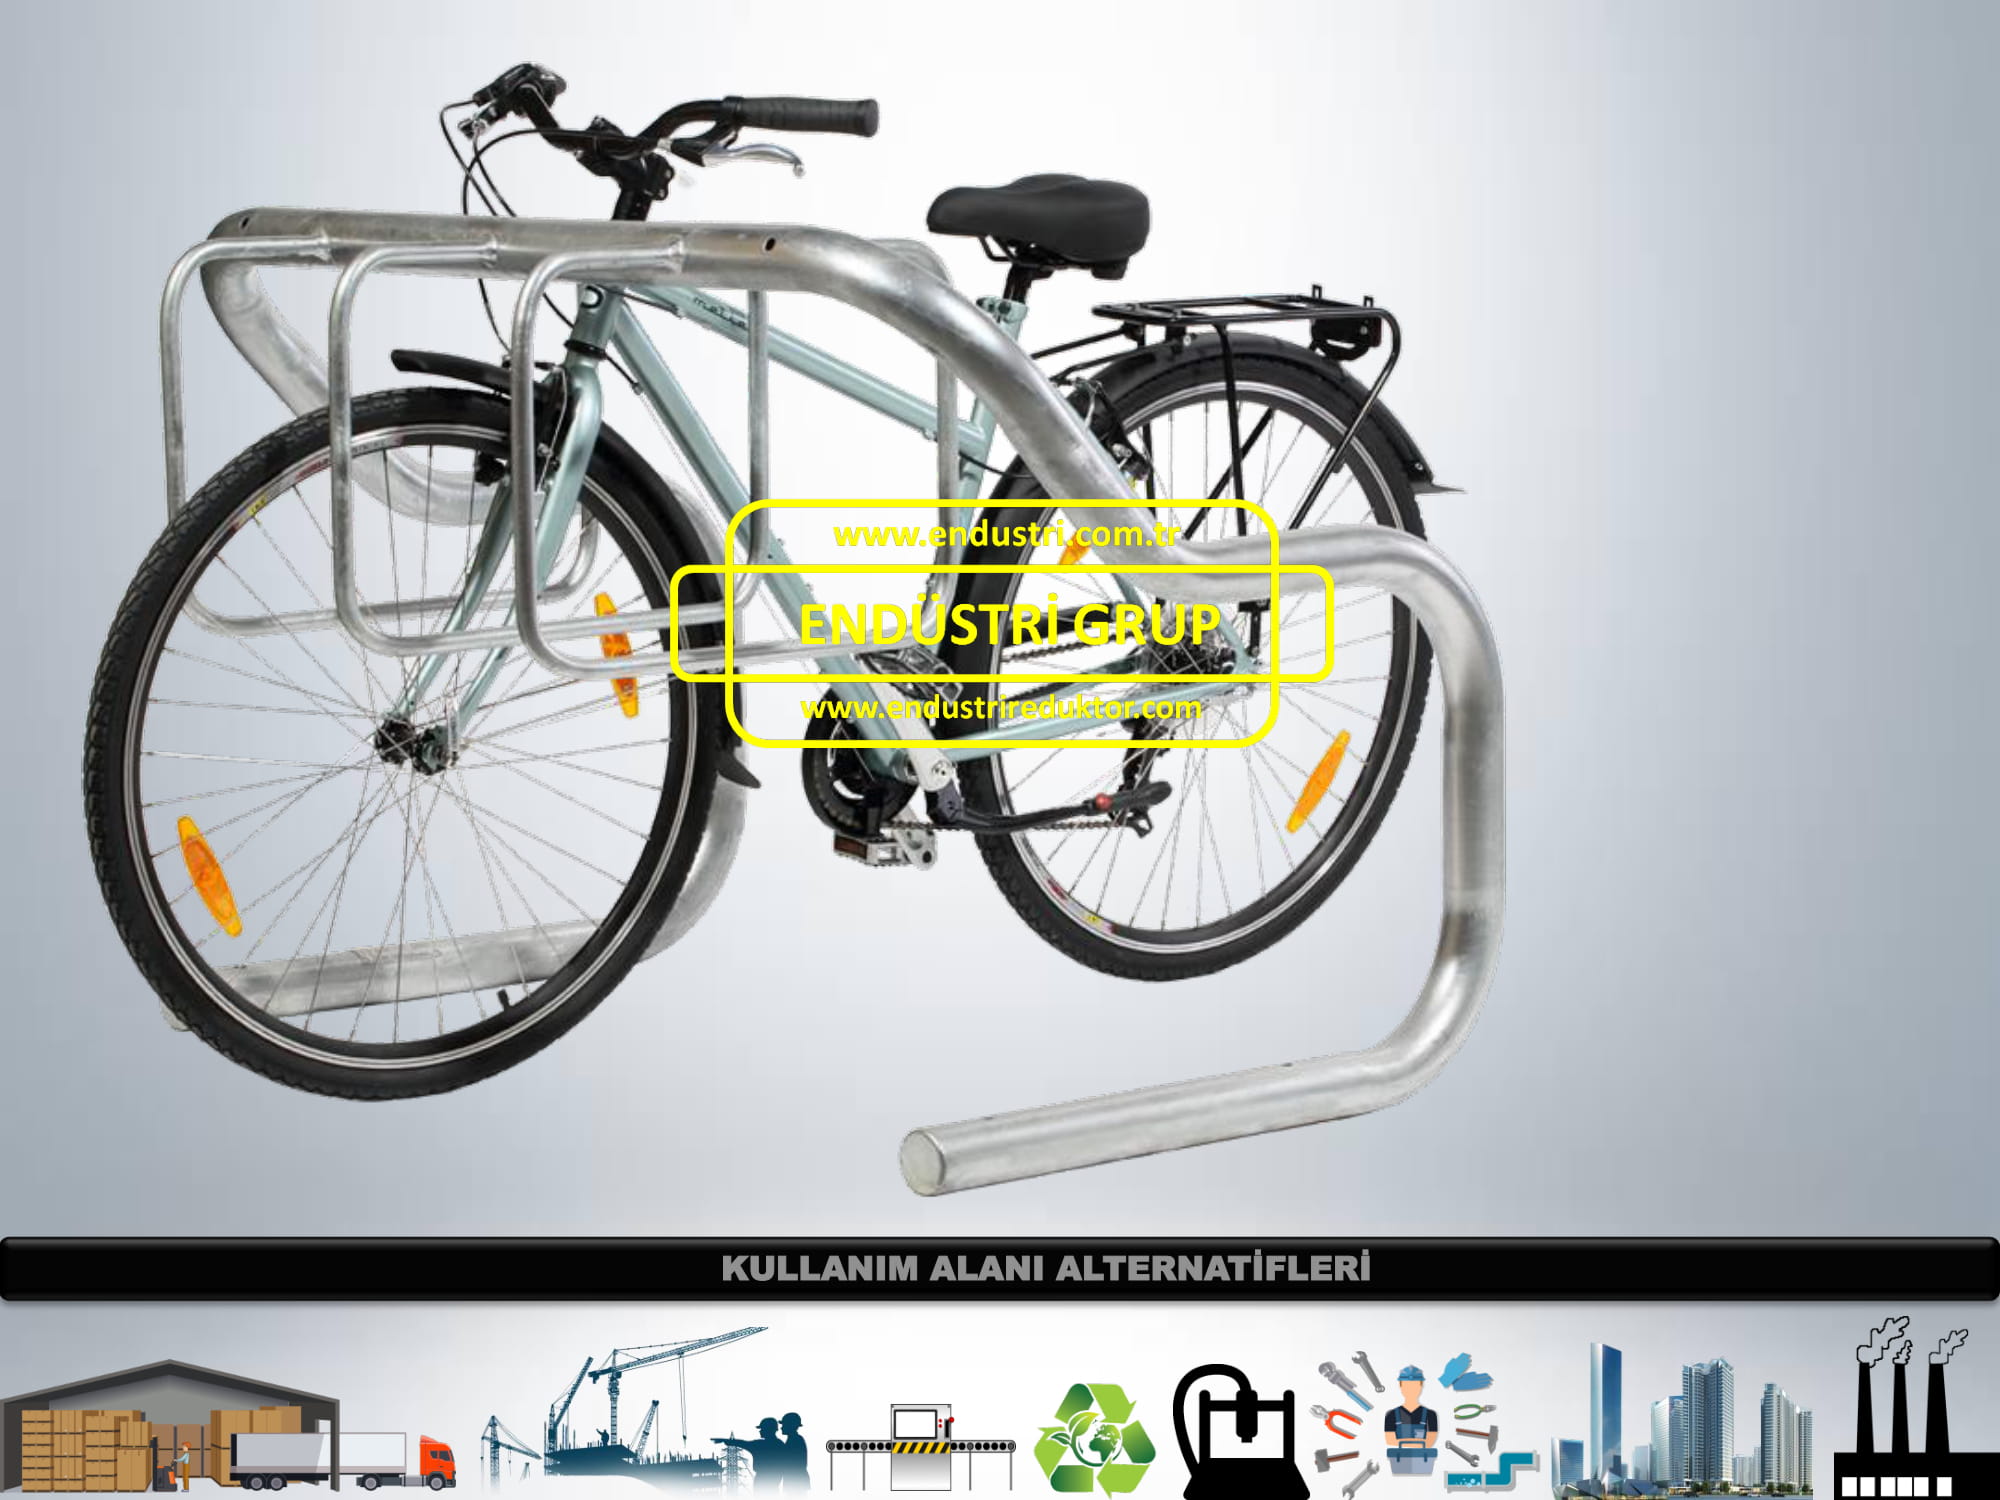 bisiklet-parki-demiri-aparati-duragi-imalati-olculeri-ureticileri-modelleri-dwg-fiyati